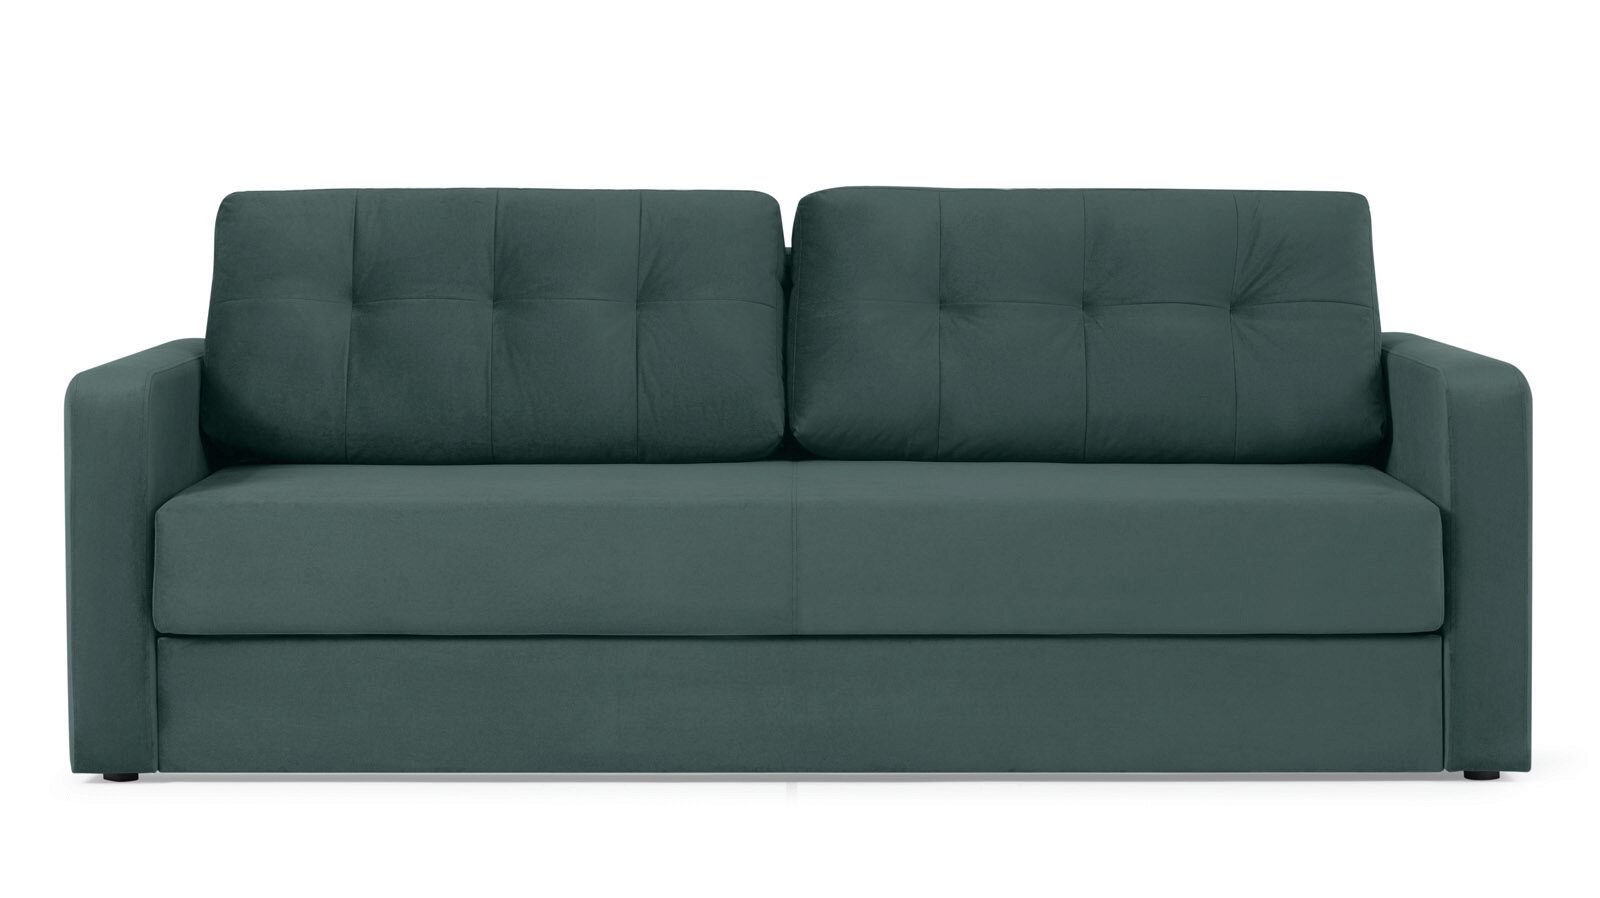 Прямой диван Loko Pro с широкими подлокотниками, с мягким матрасом плавучий диван выпуск 2